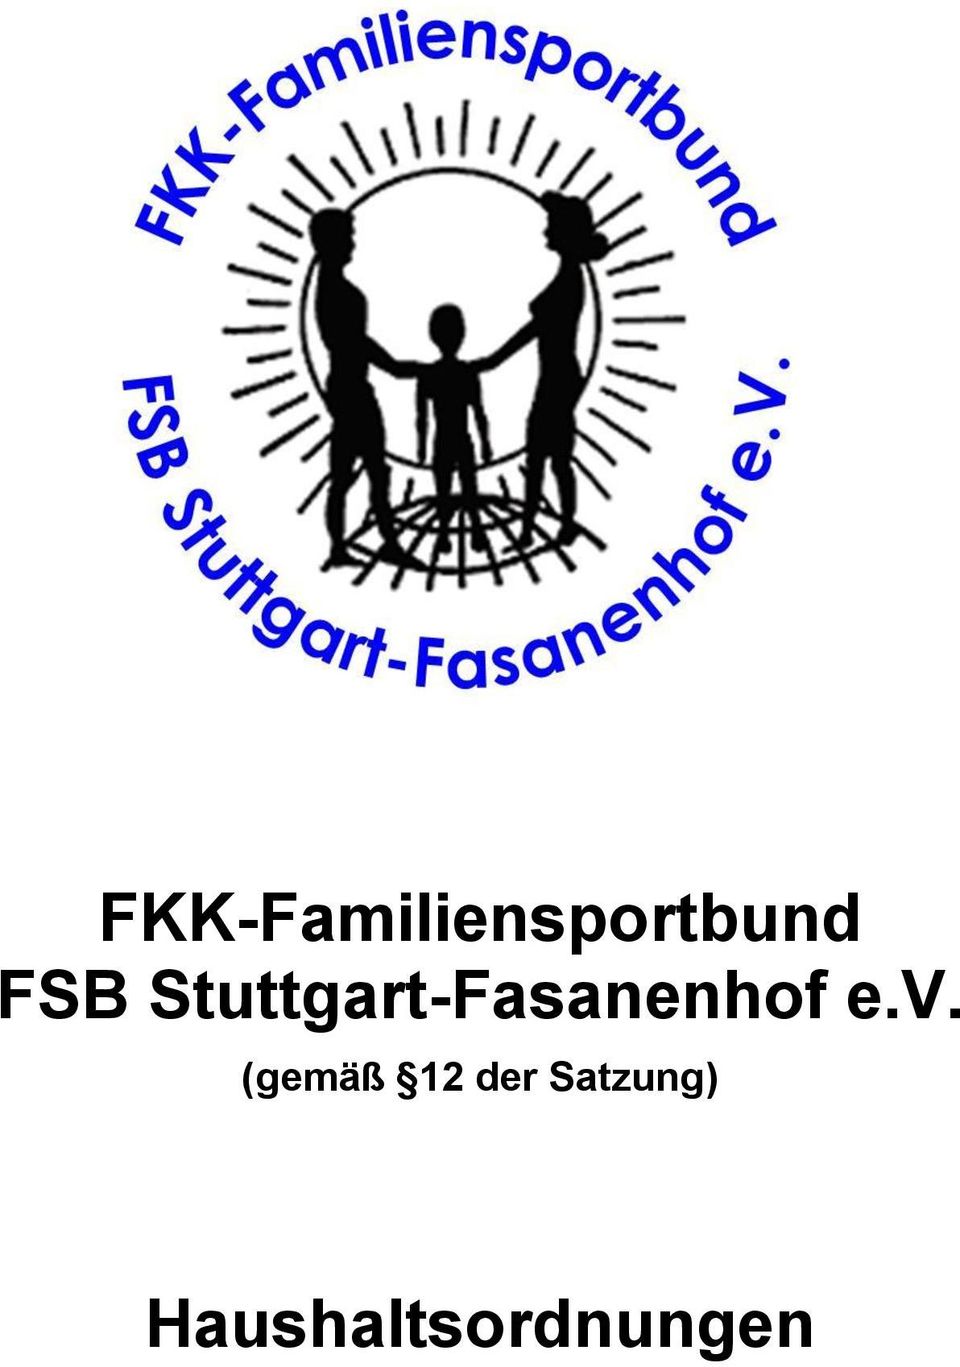 Stuttgart-Fasanenhof e.